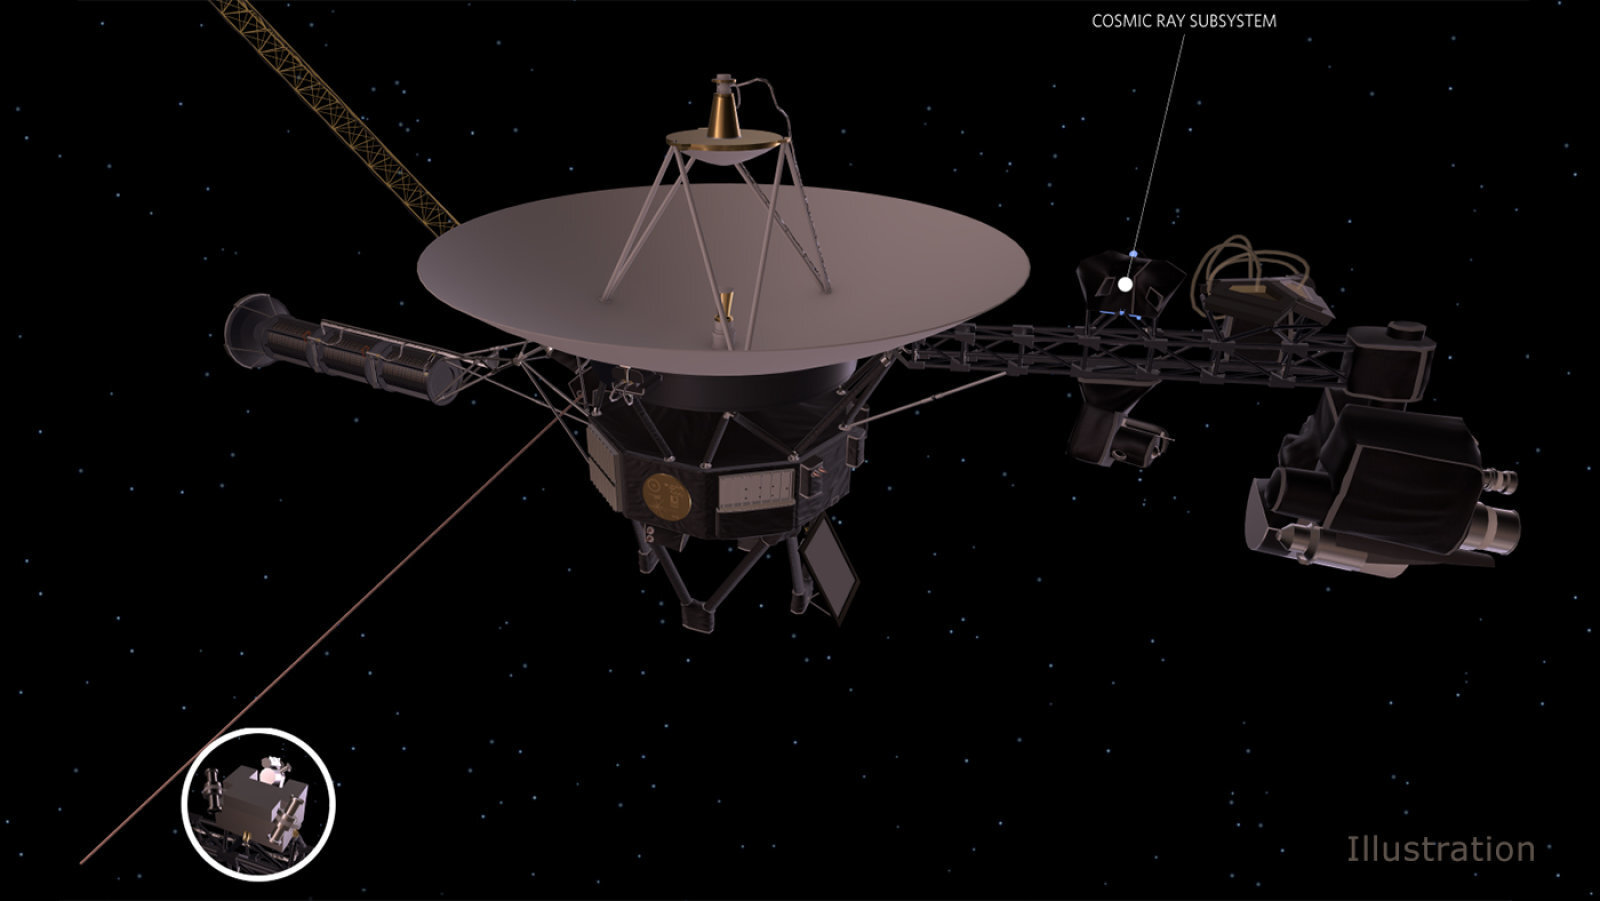 Η NASA παλεύει για να κρατήσει «ζωντανές» τις διαστημοσυσκευές Voyager μετά από τέσσερις δεκαετίες